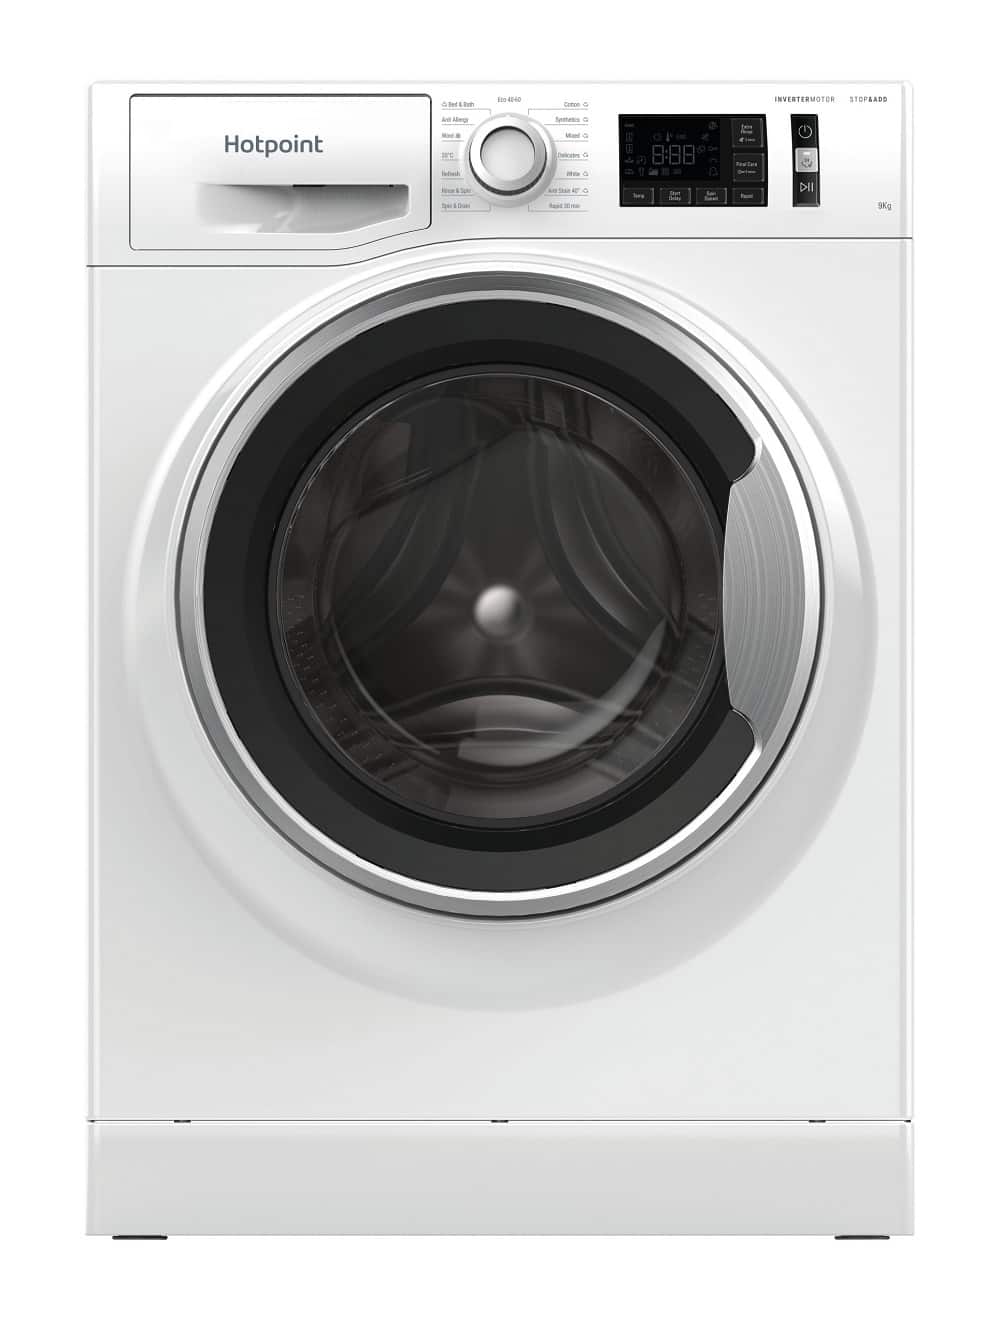 washing machine reset hotpoint machines